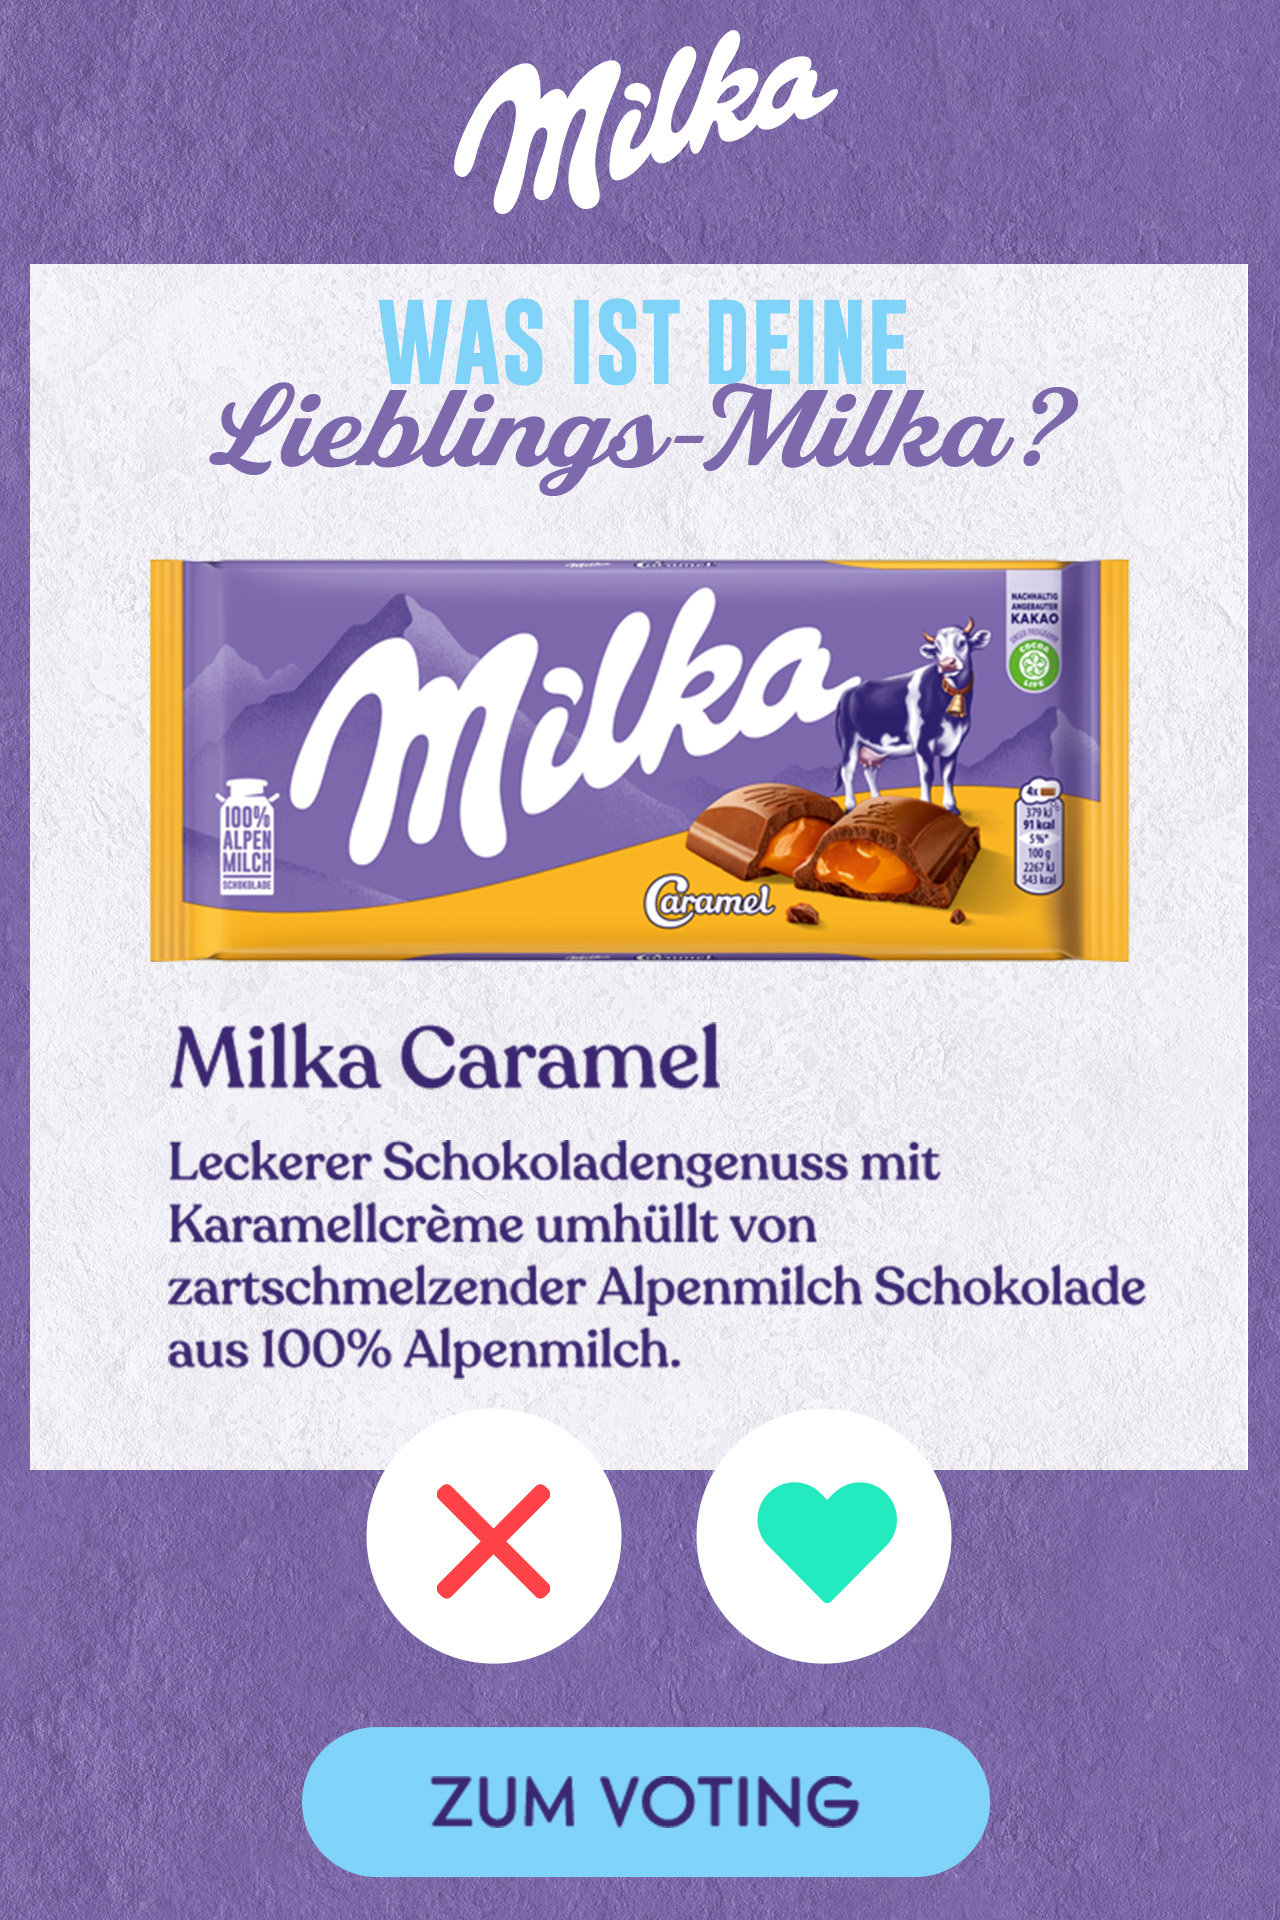 Mondelez Österreich mit Mobile-Kampagne für Milka im Goldbach Netzwerk